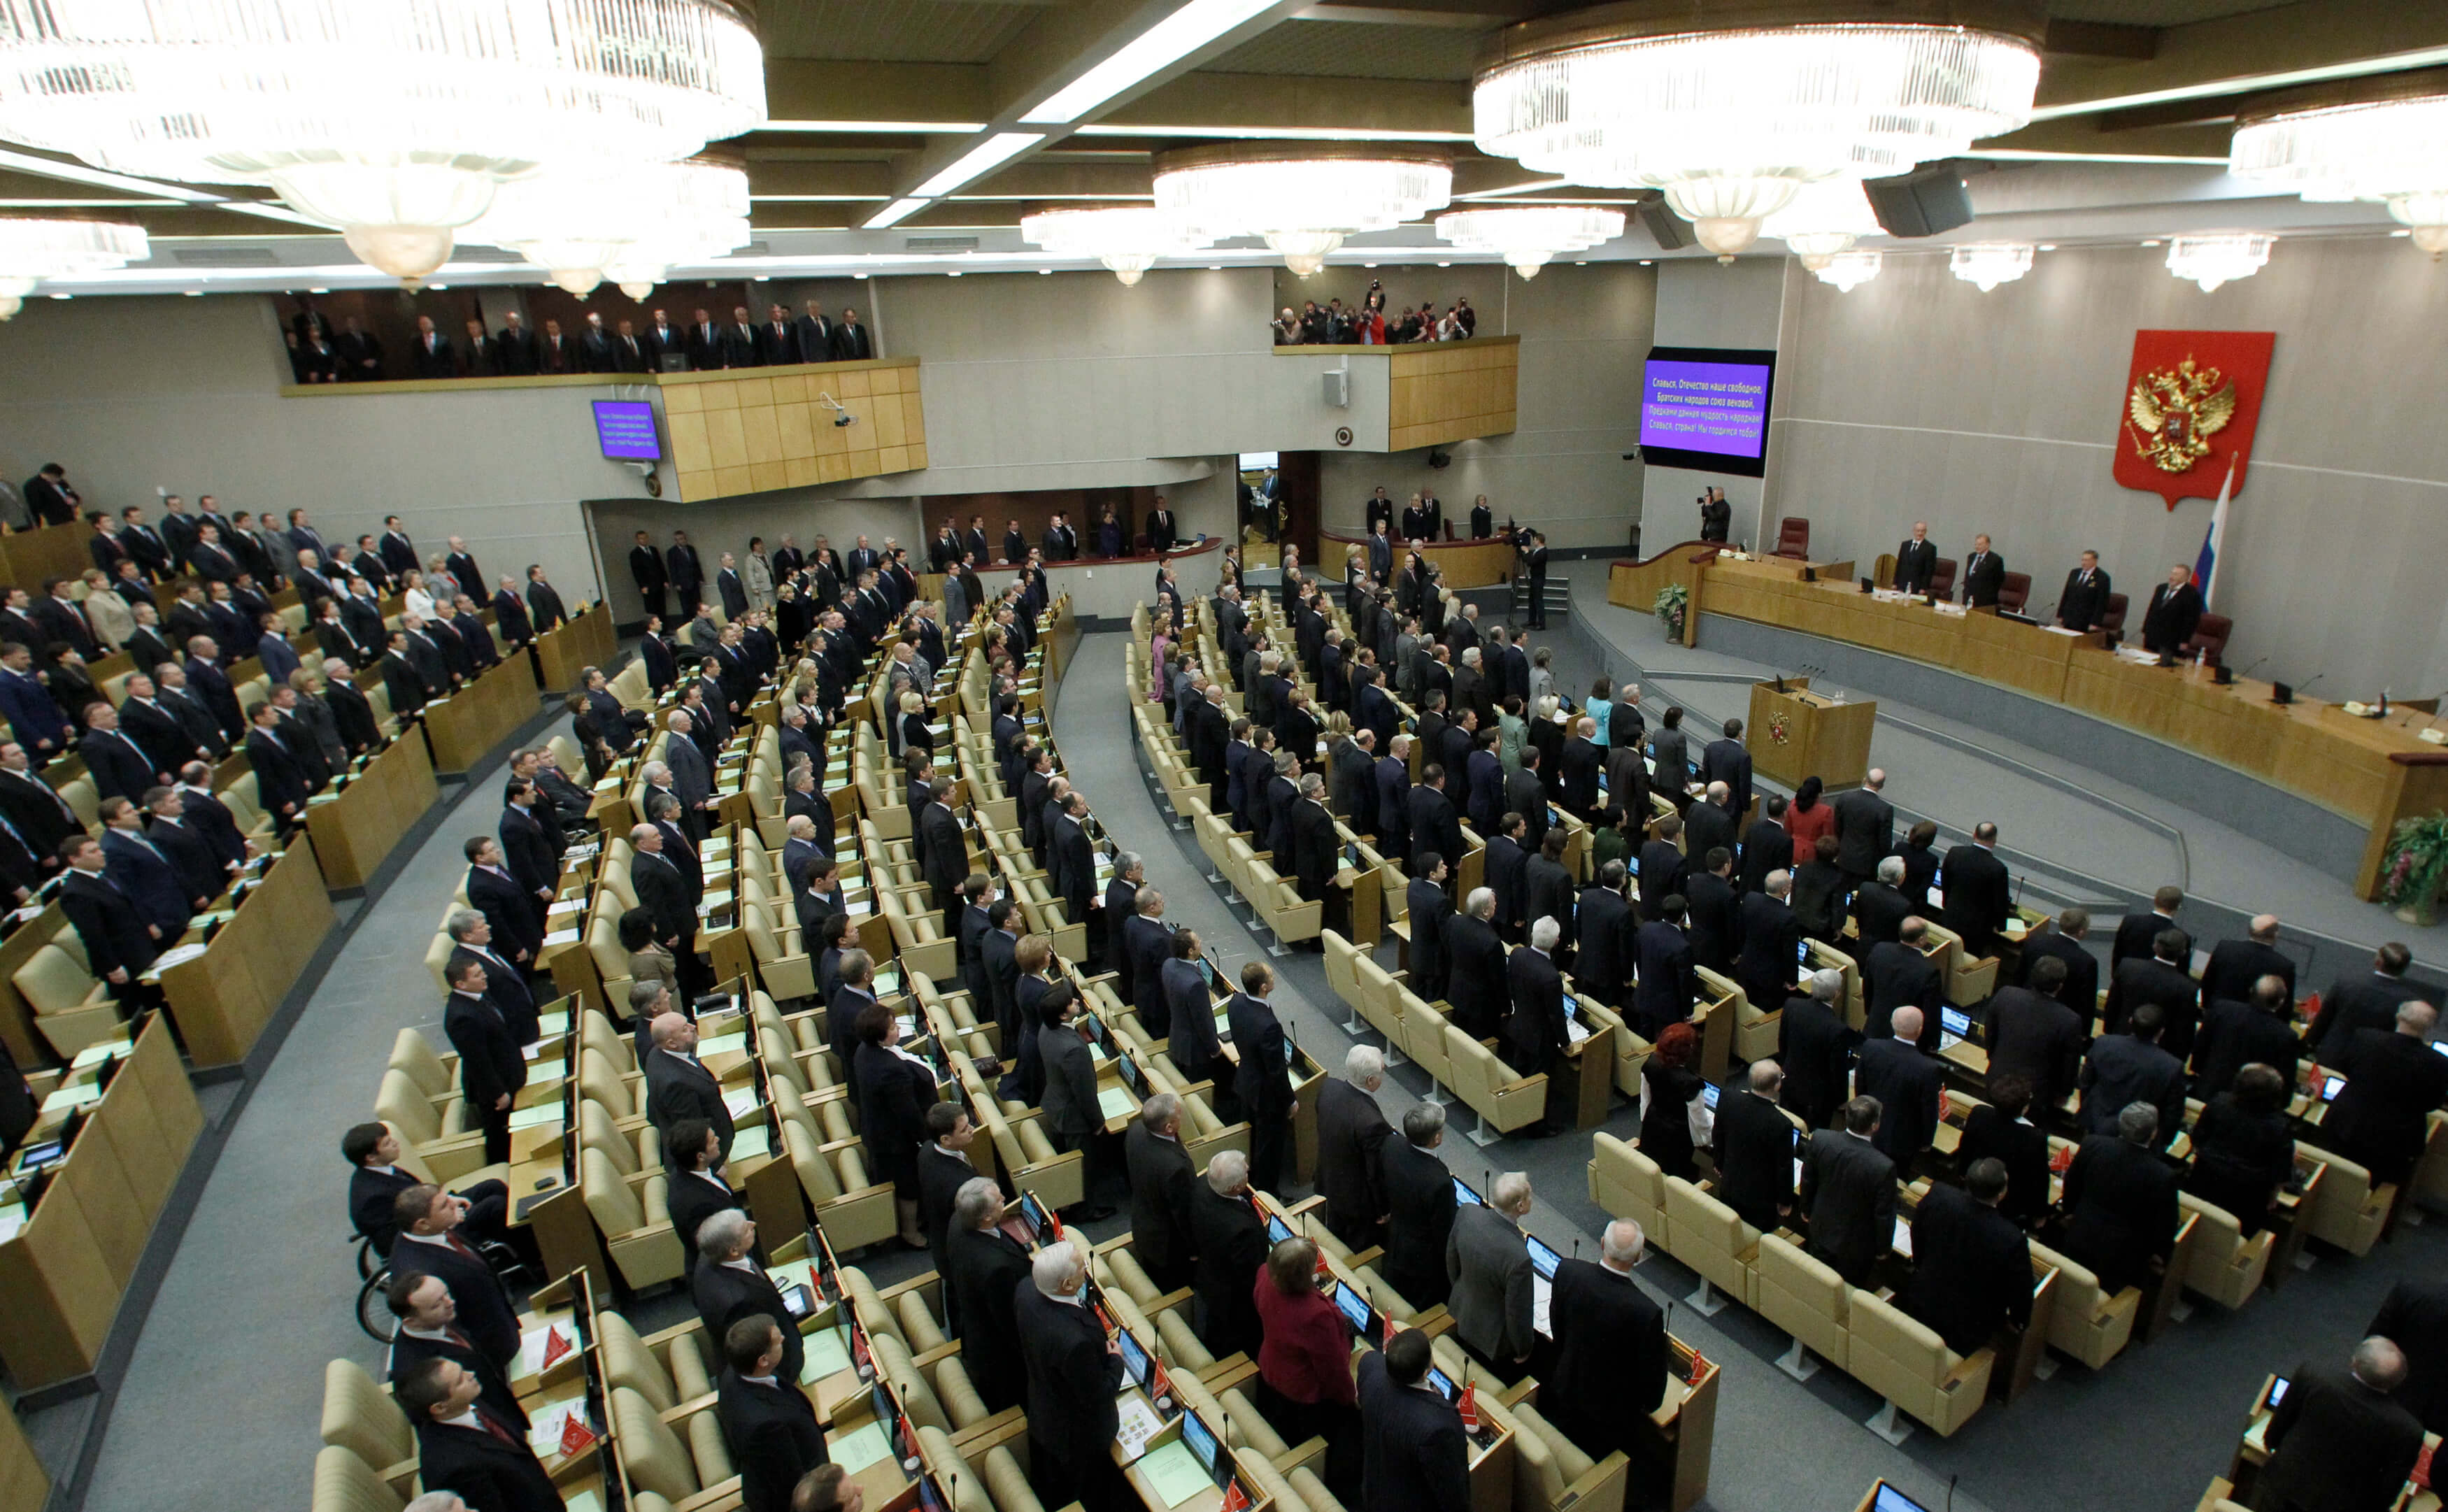 Ρωσία: Φτιάχνουν…. “πίνακα ντροπής” στο κοινοβούλιο για όσους λένε κακές λέξεις!